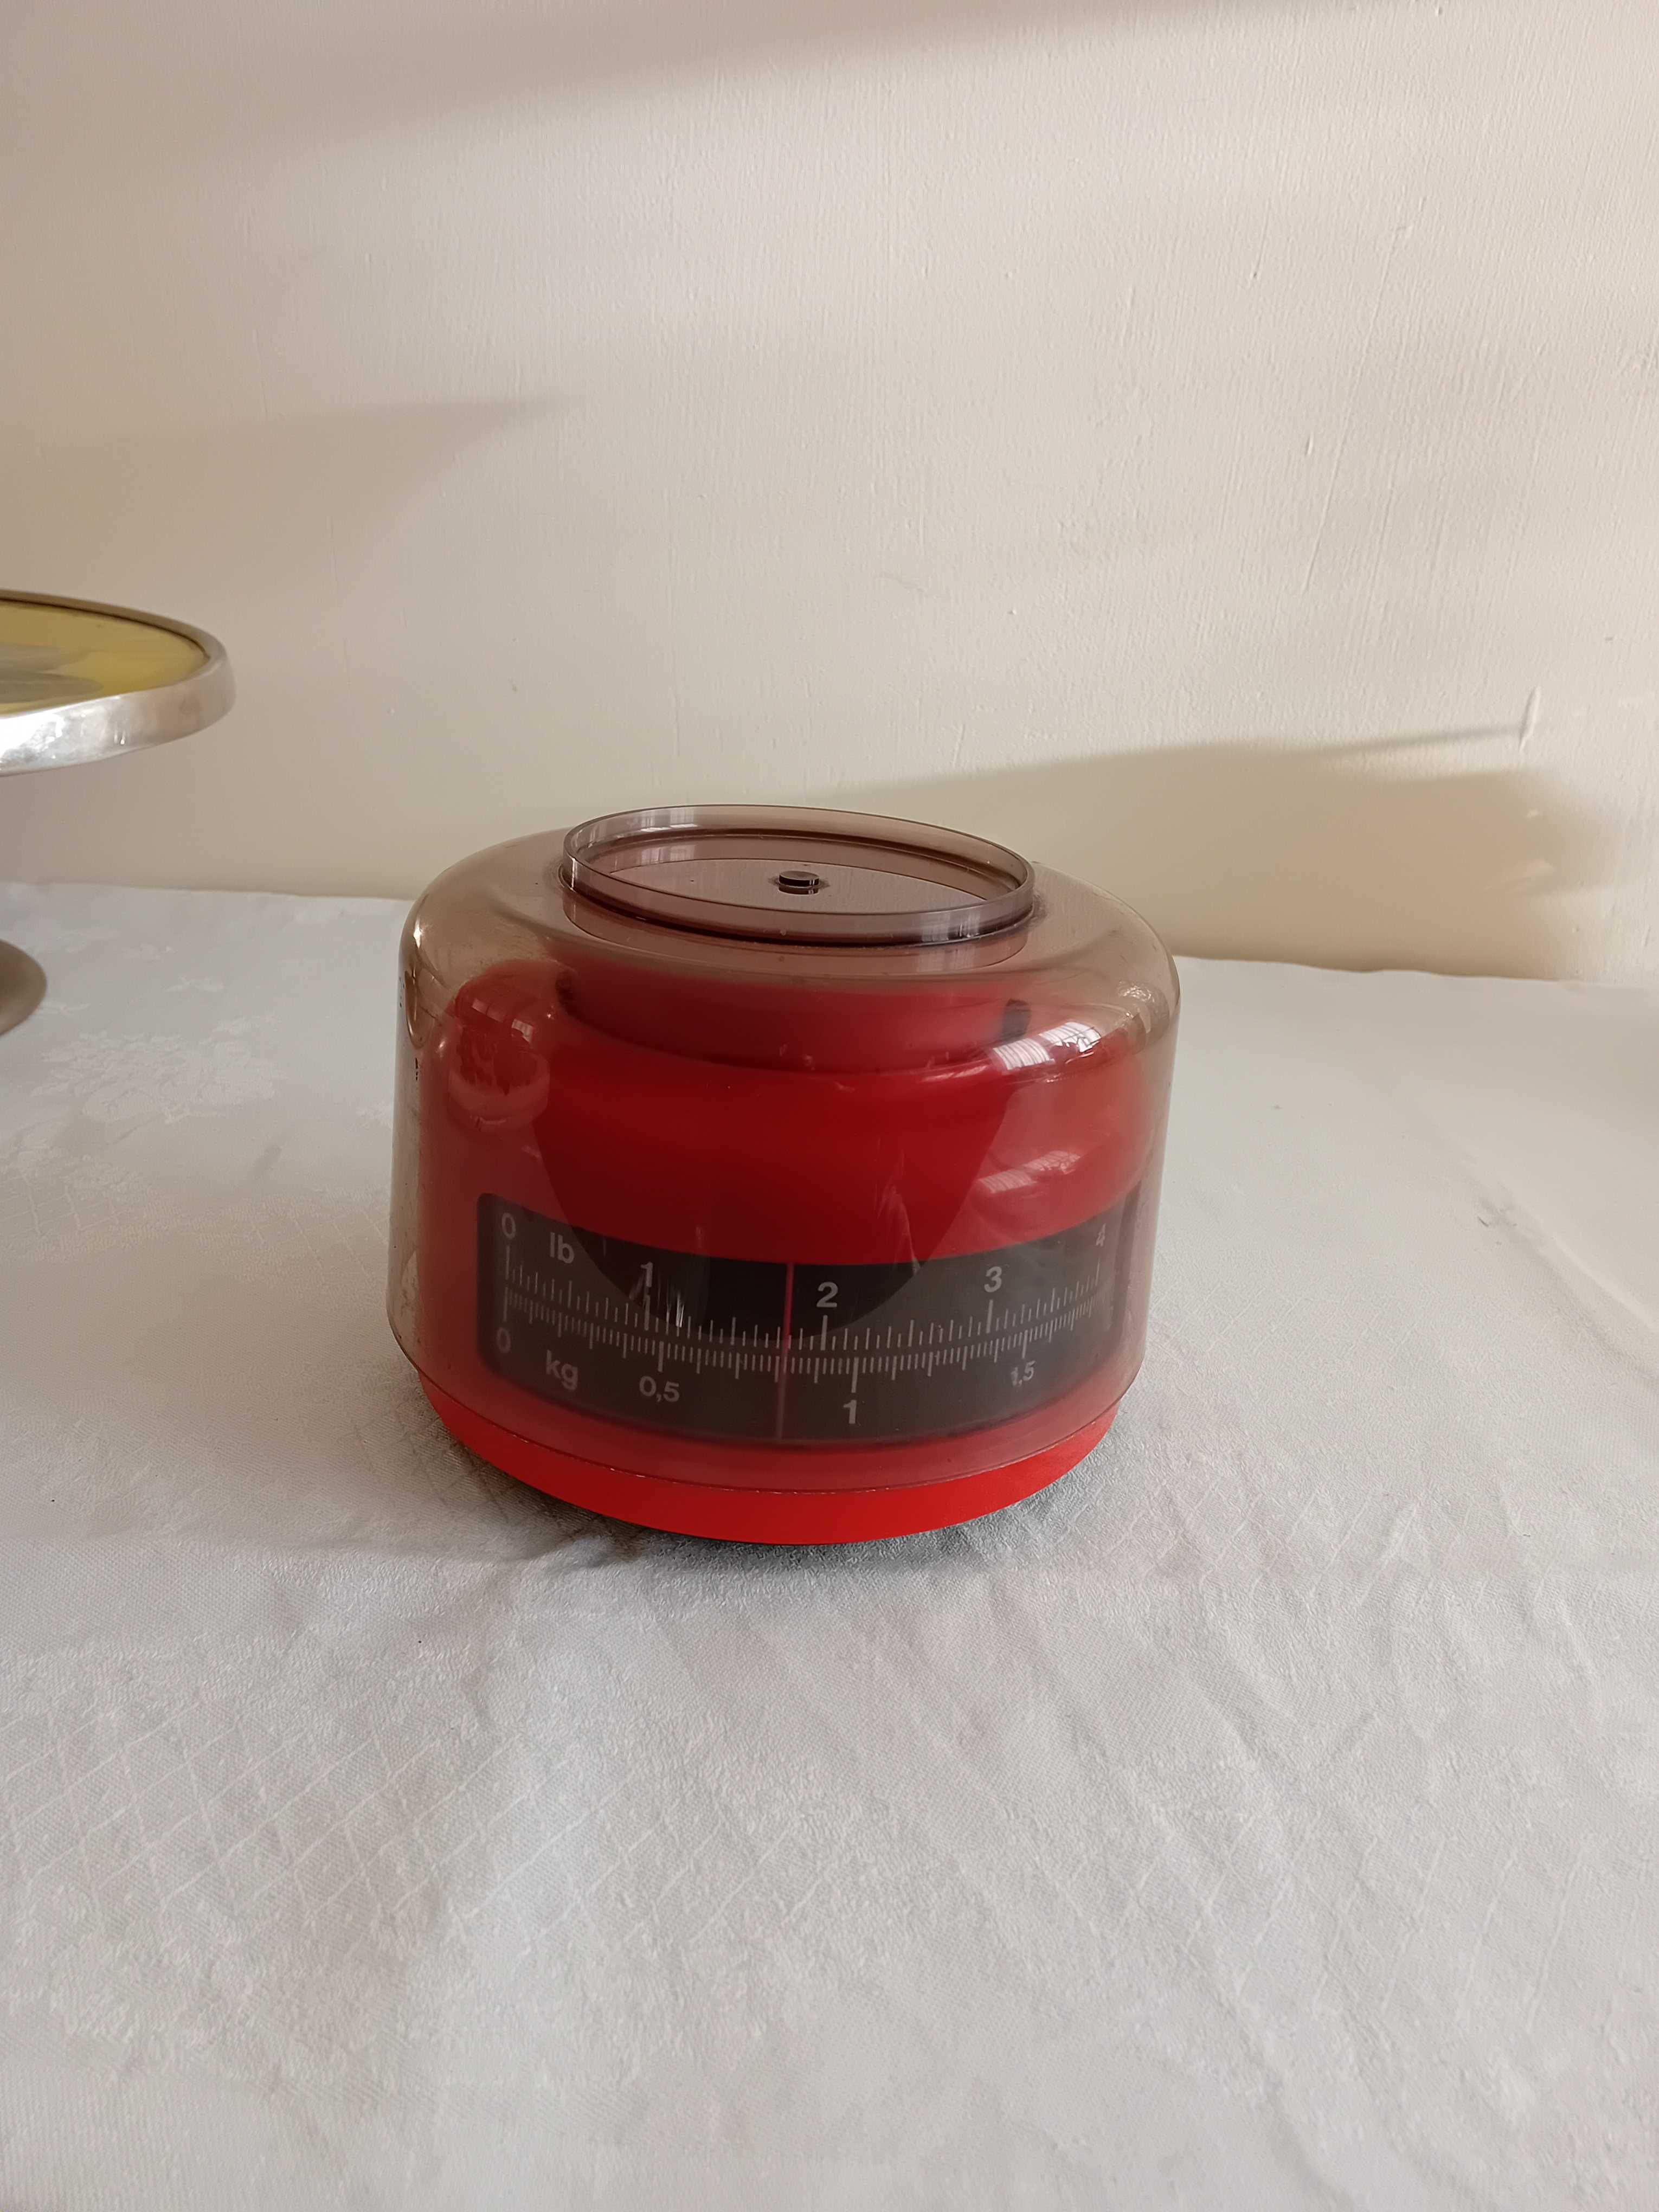 waga kuchenna vintage PRL , kolor czerwony do 2 kg.